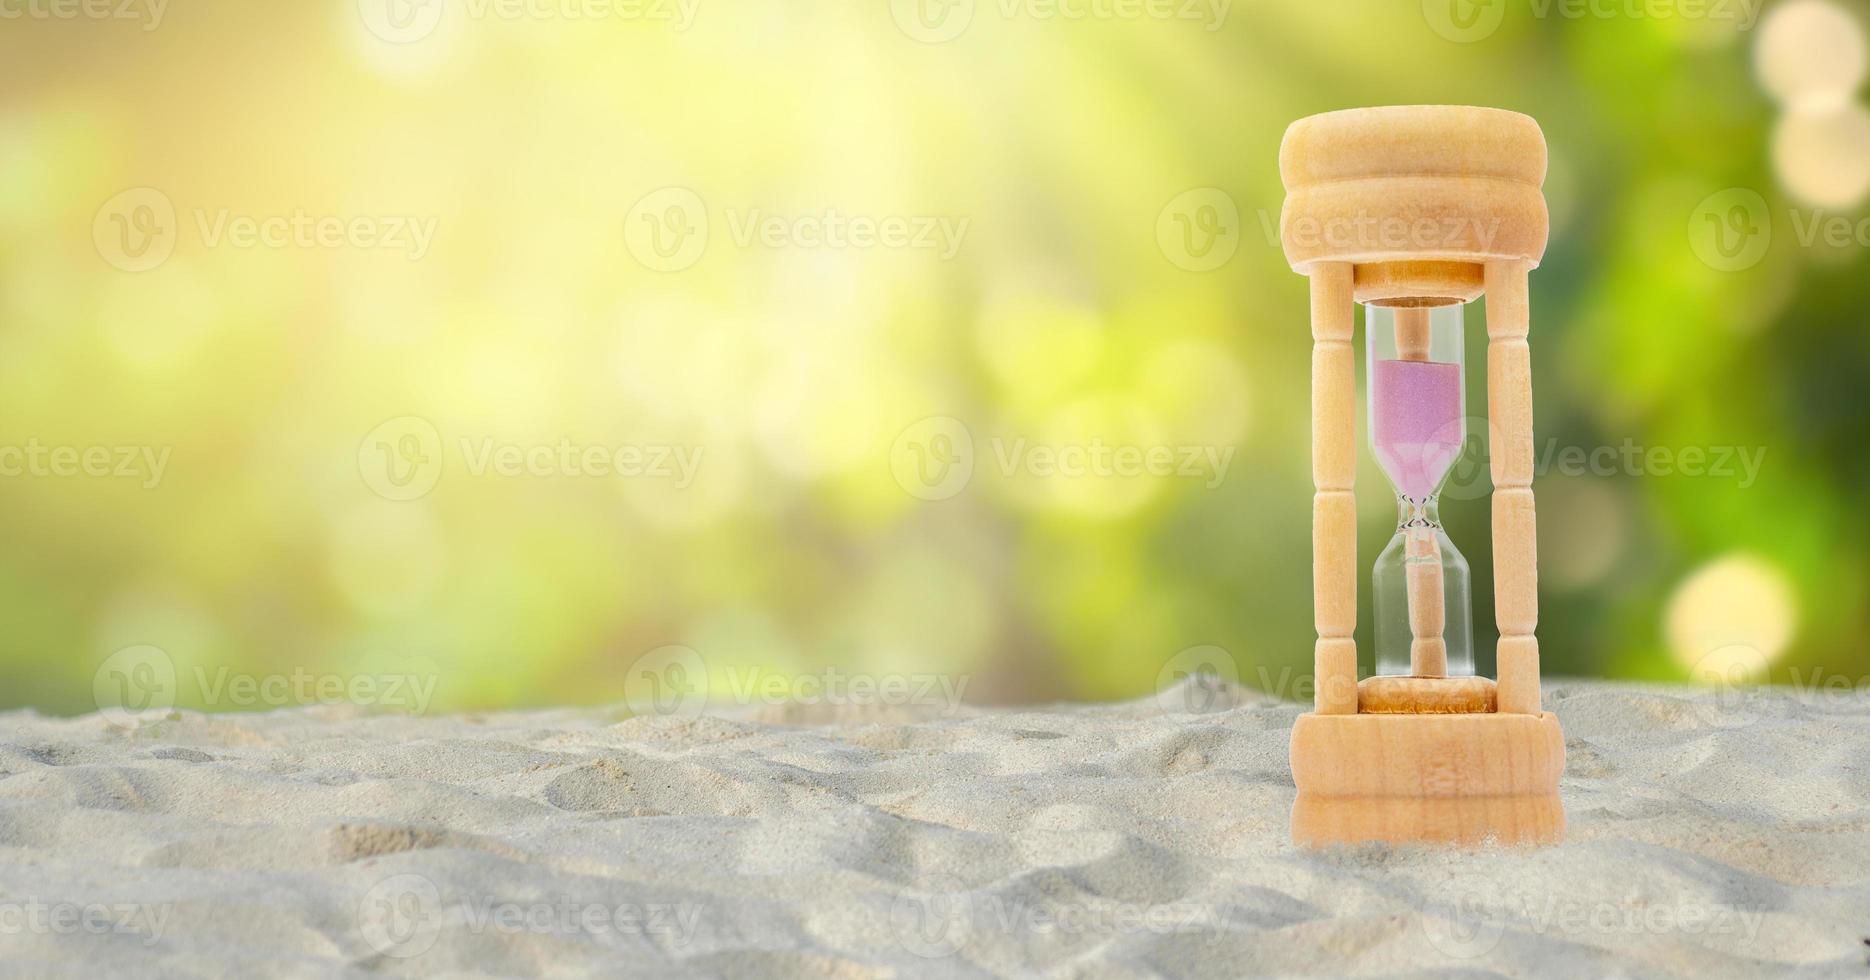 timglasuppsättning på en vit sandbakgrund, naturlig grön bakgrund, tidsbegrepp foto